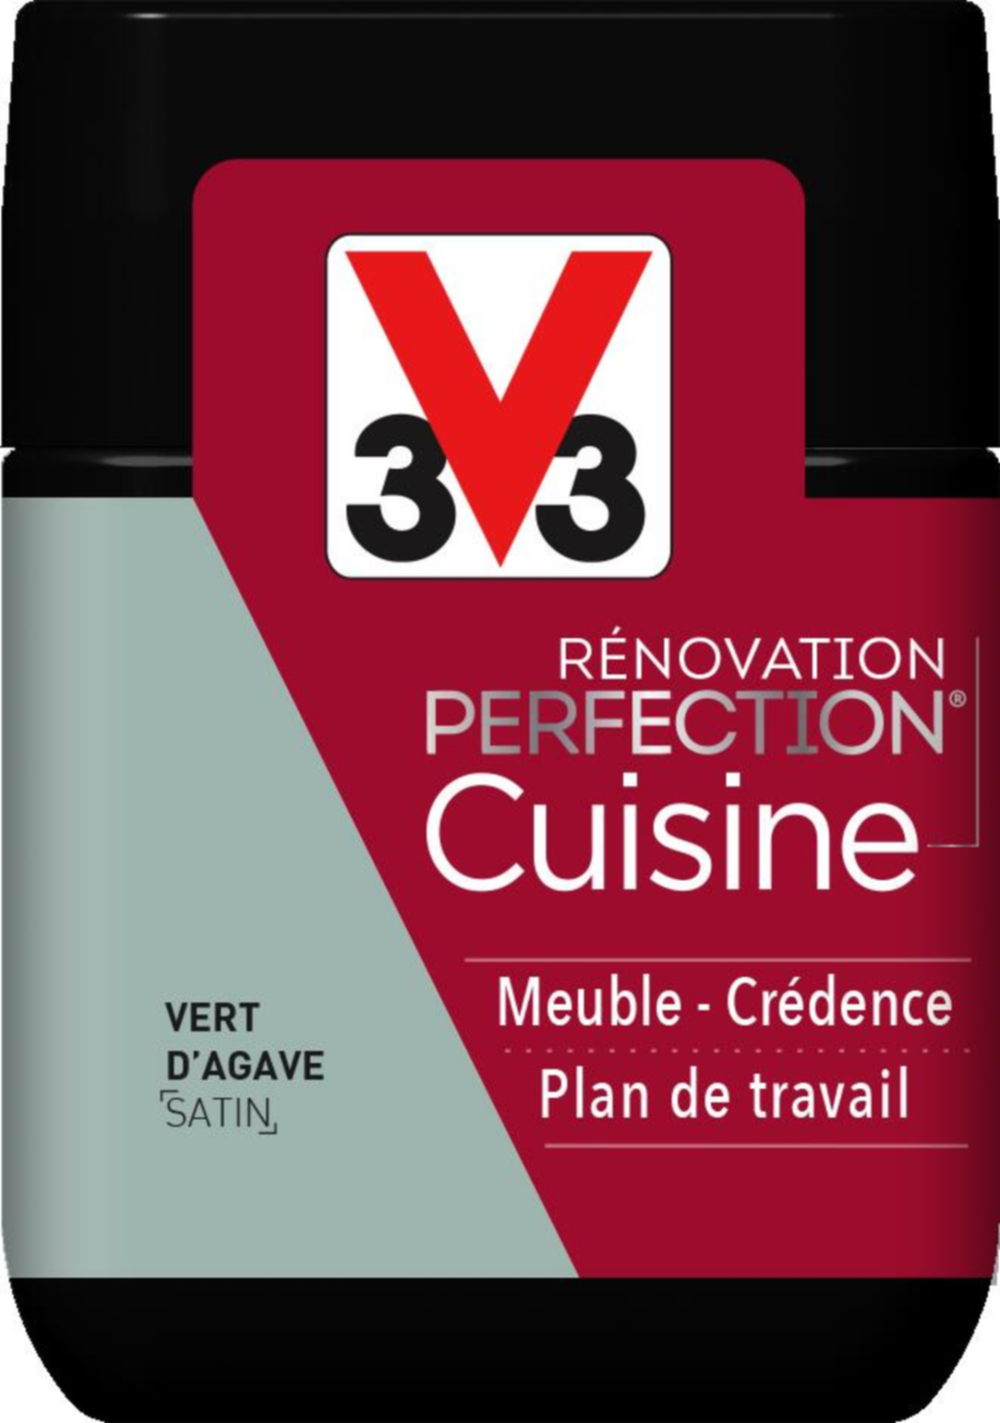 Testeur de peinture rénovation cuisine Perfection vert agave satin 75ml - V33